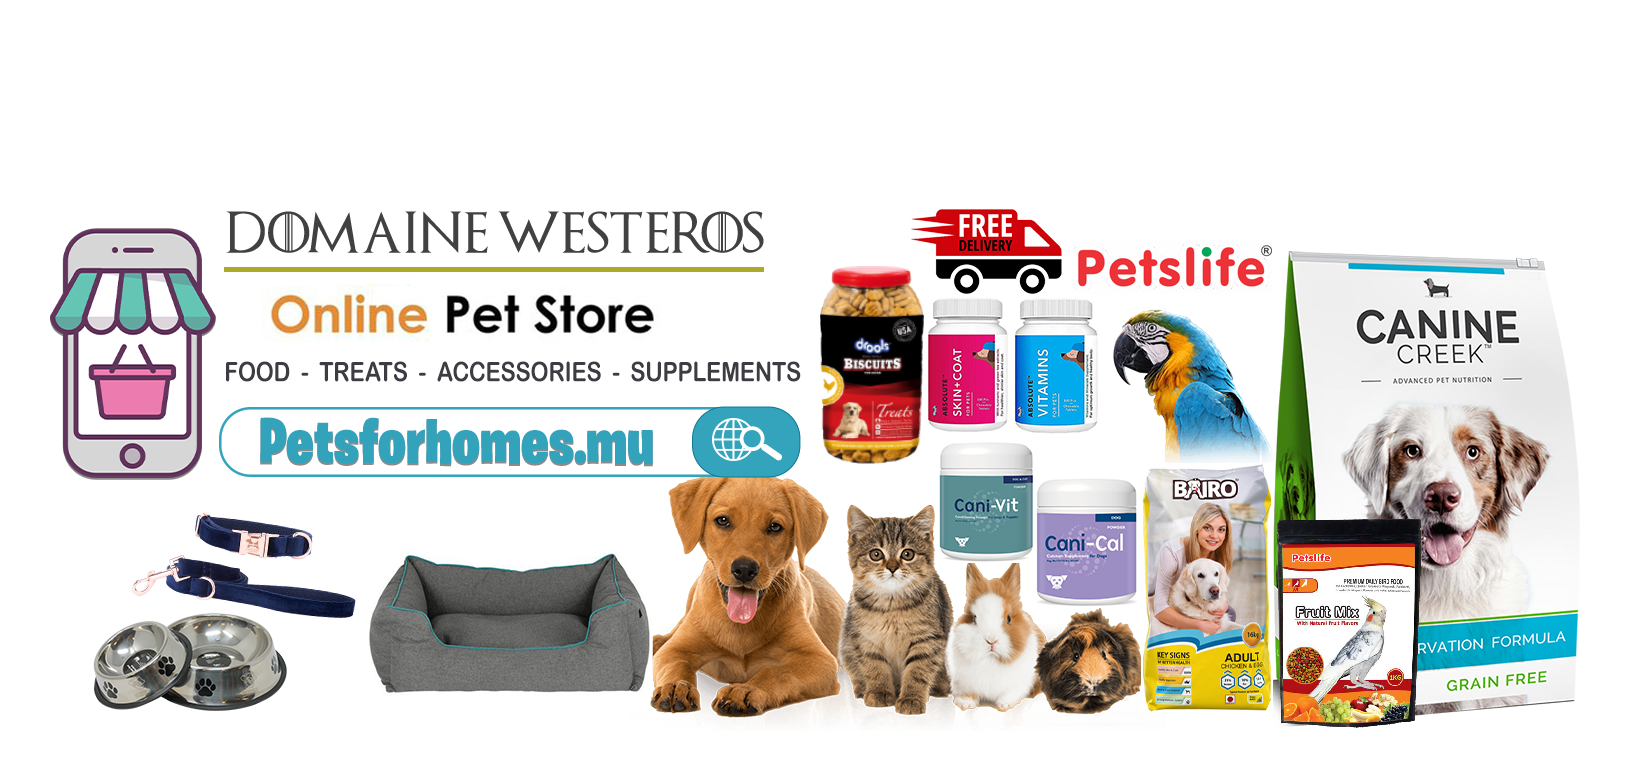 Domaine Westeros online pet store